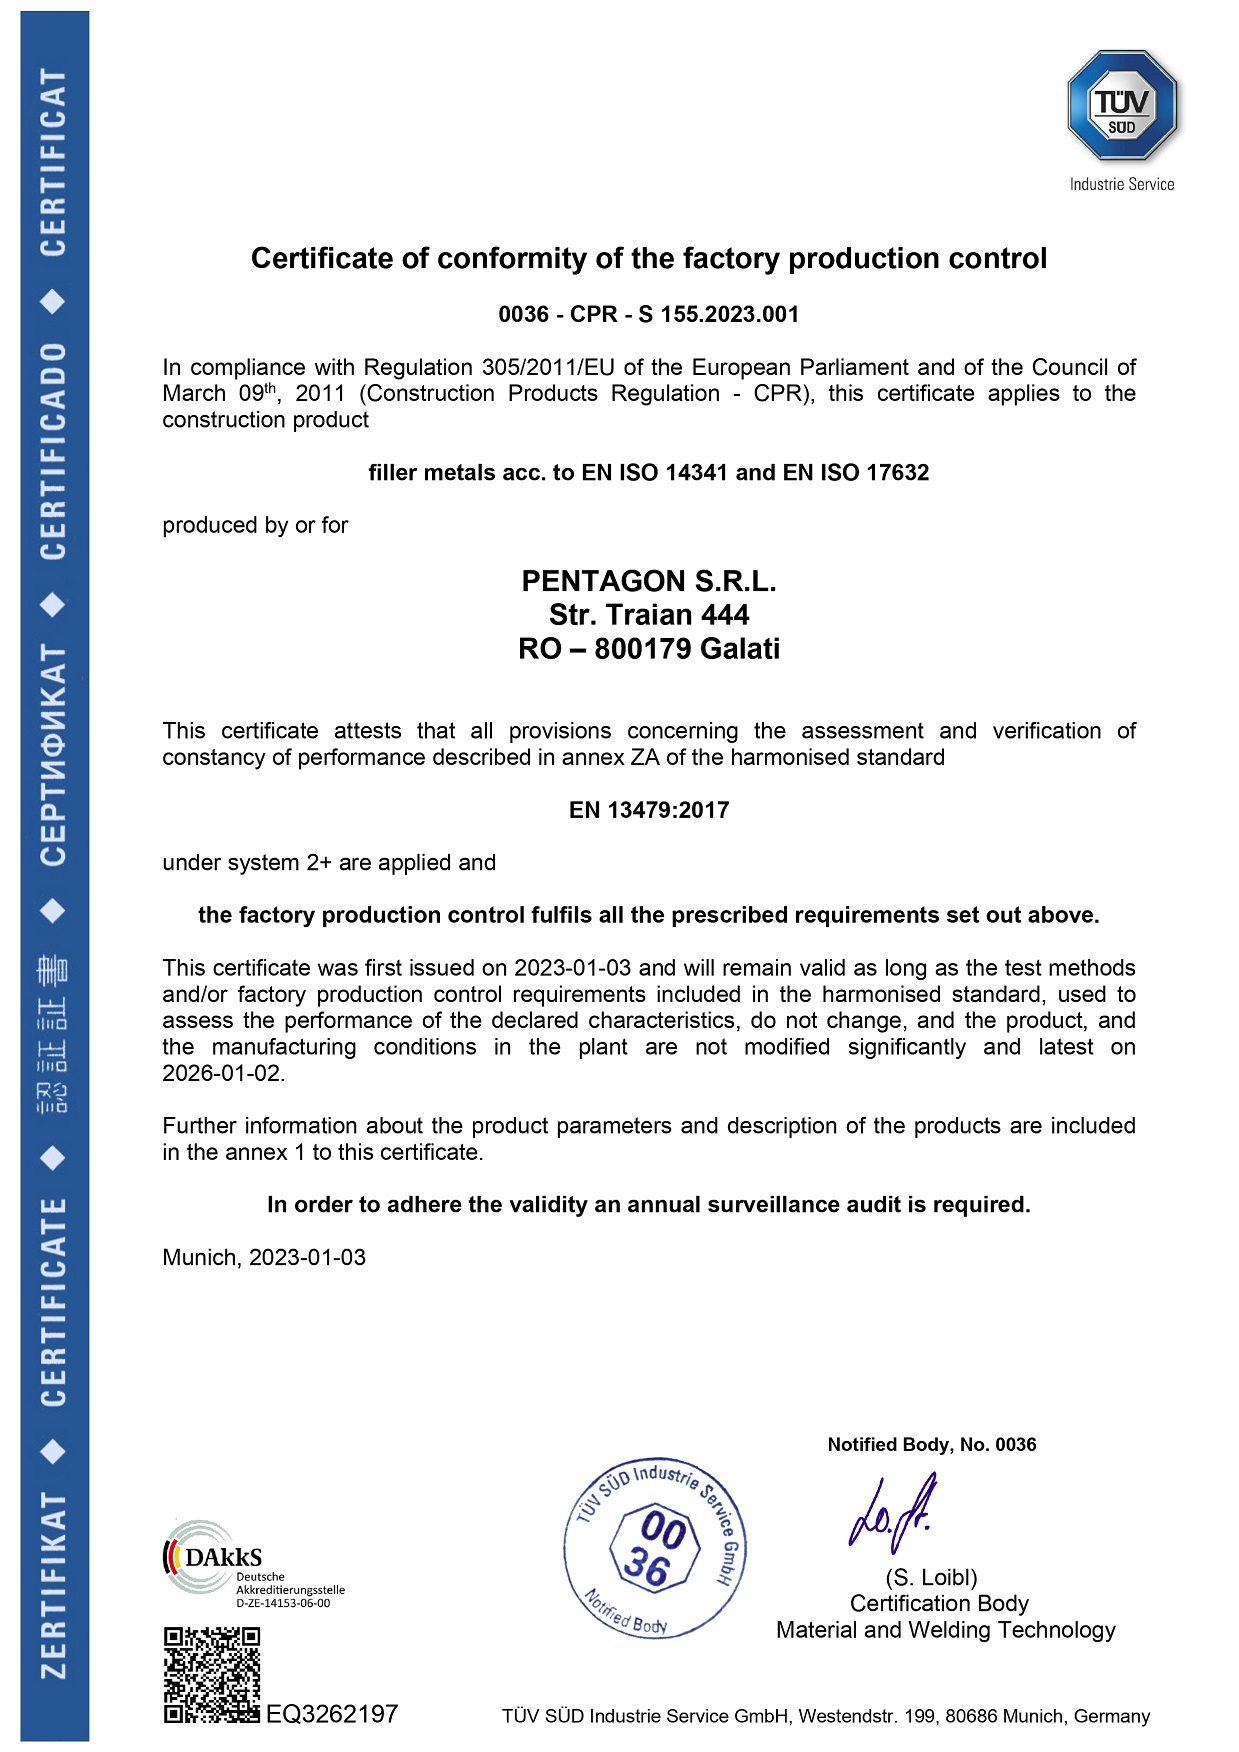 Certificat de conformitate al controlului productiei din fabrica - Pentagon Romania